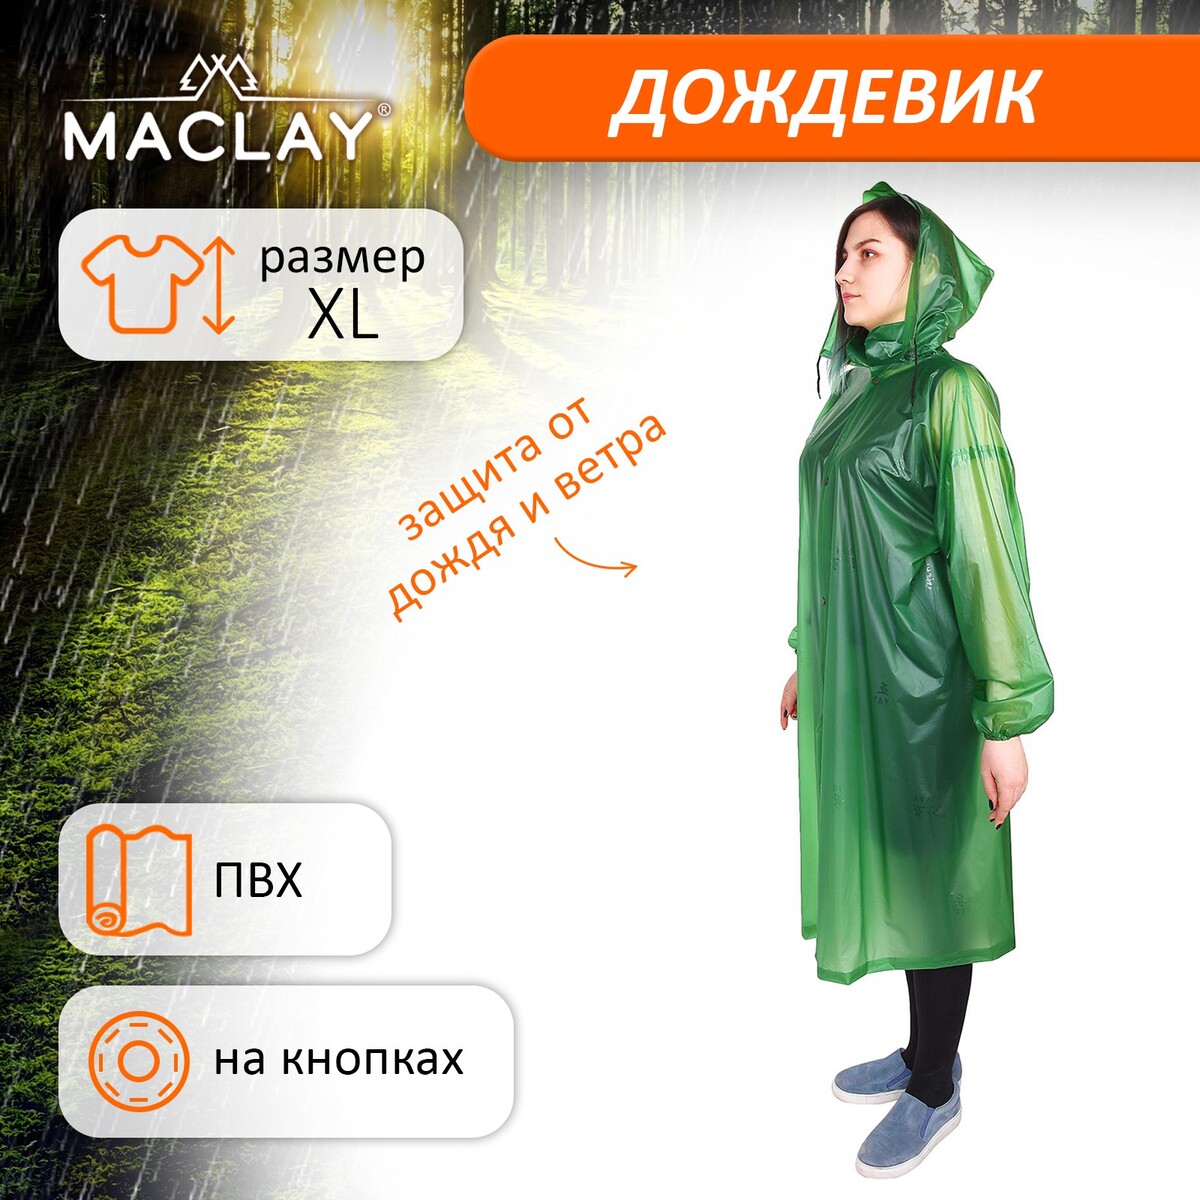 Дождевик-плащ maclay, цвет зеленый, р. xl плащ дождевик пончо акм взрослый тонкий зеленый vs1031a green